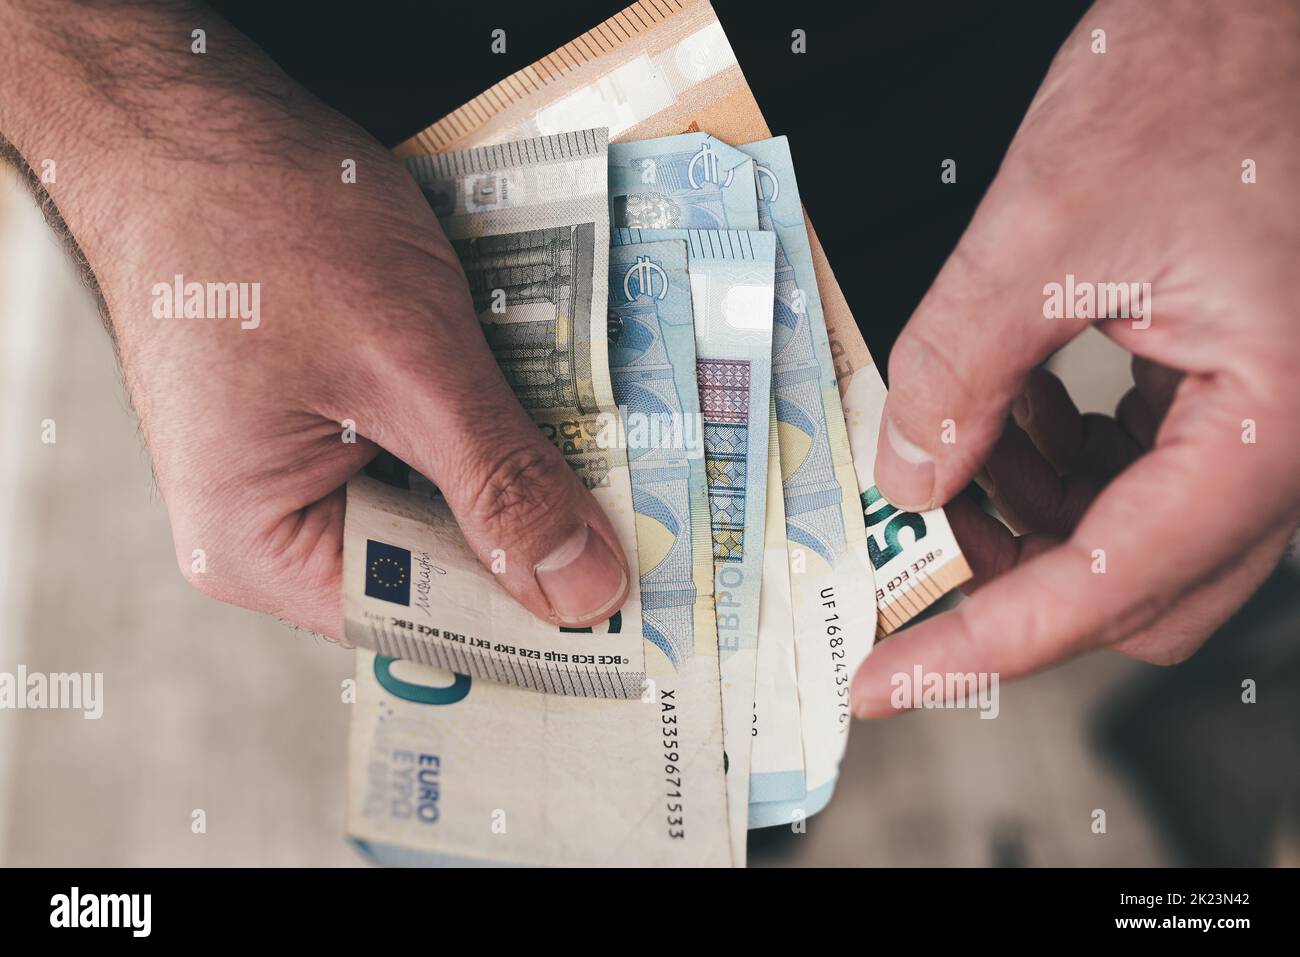 vue de dessus en bas des mains de l'homme tenant des factures en euros, comptant l'argent Banque D'Images